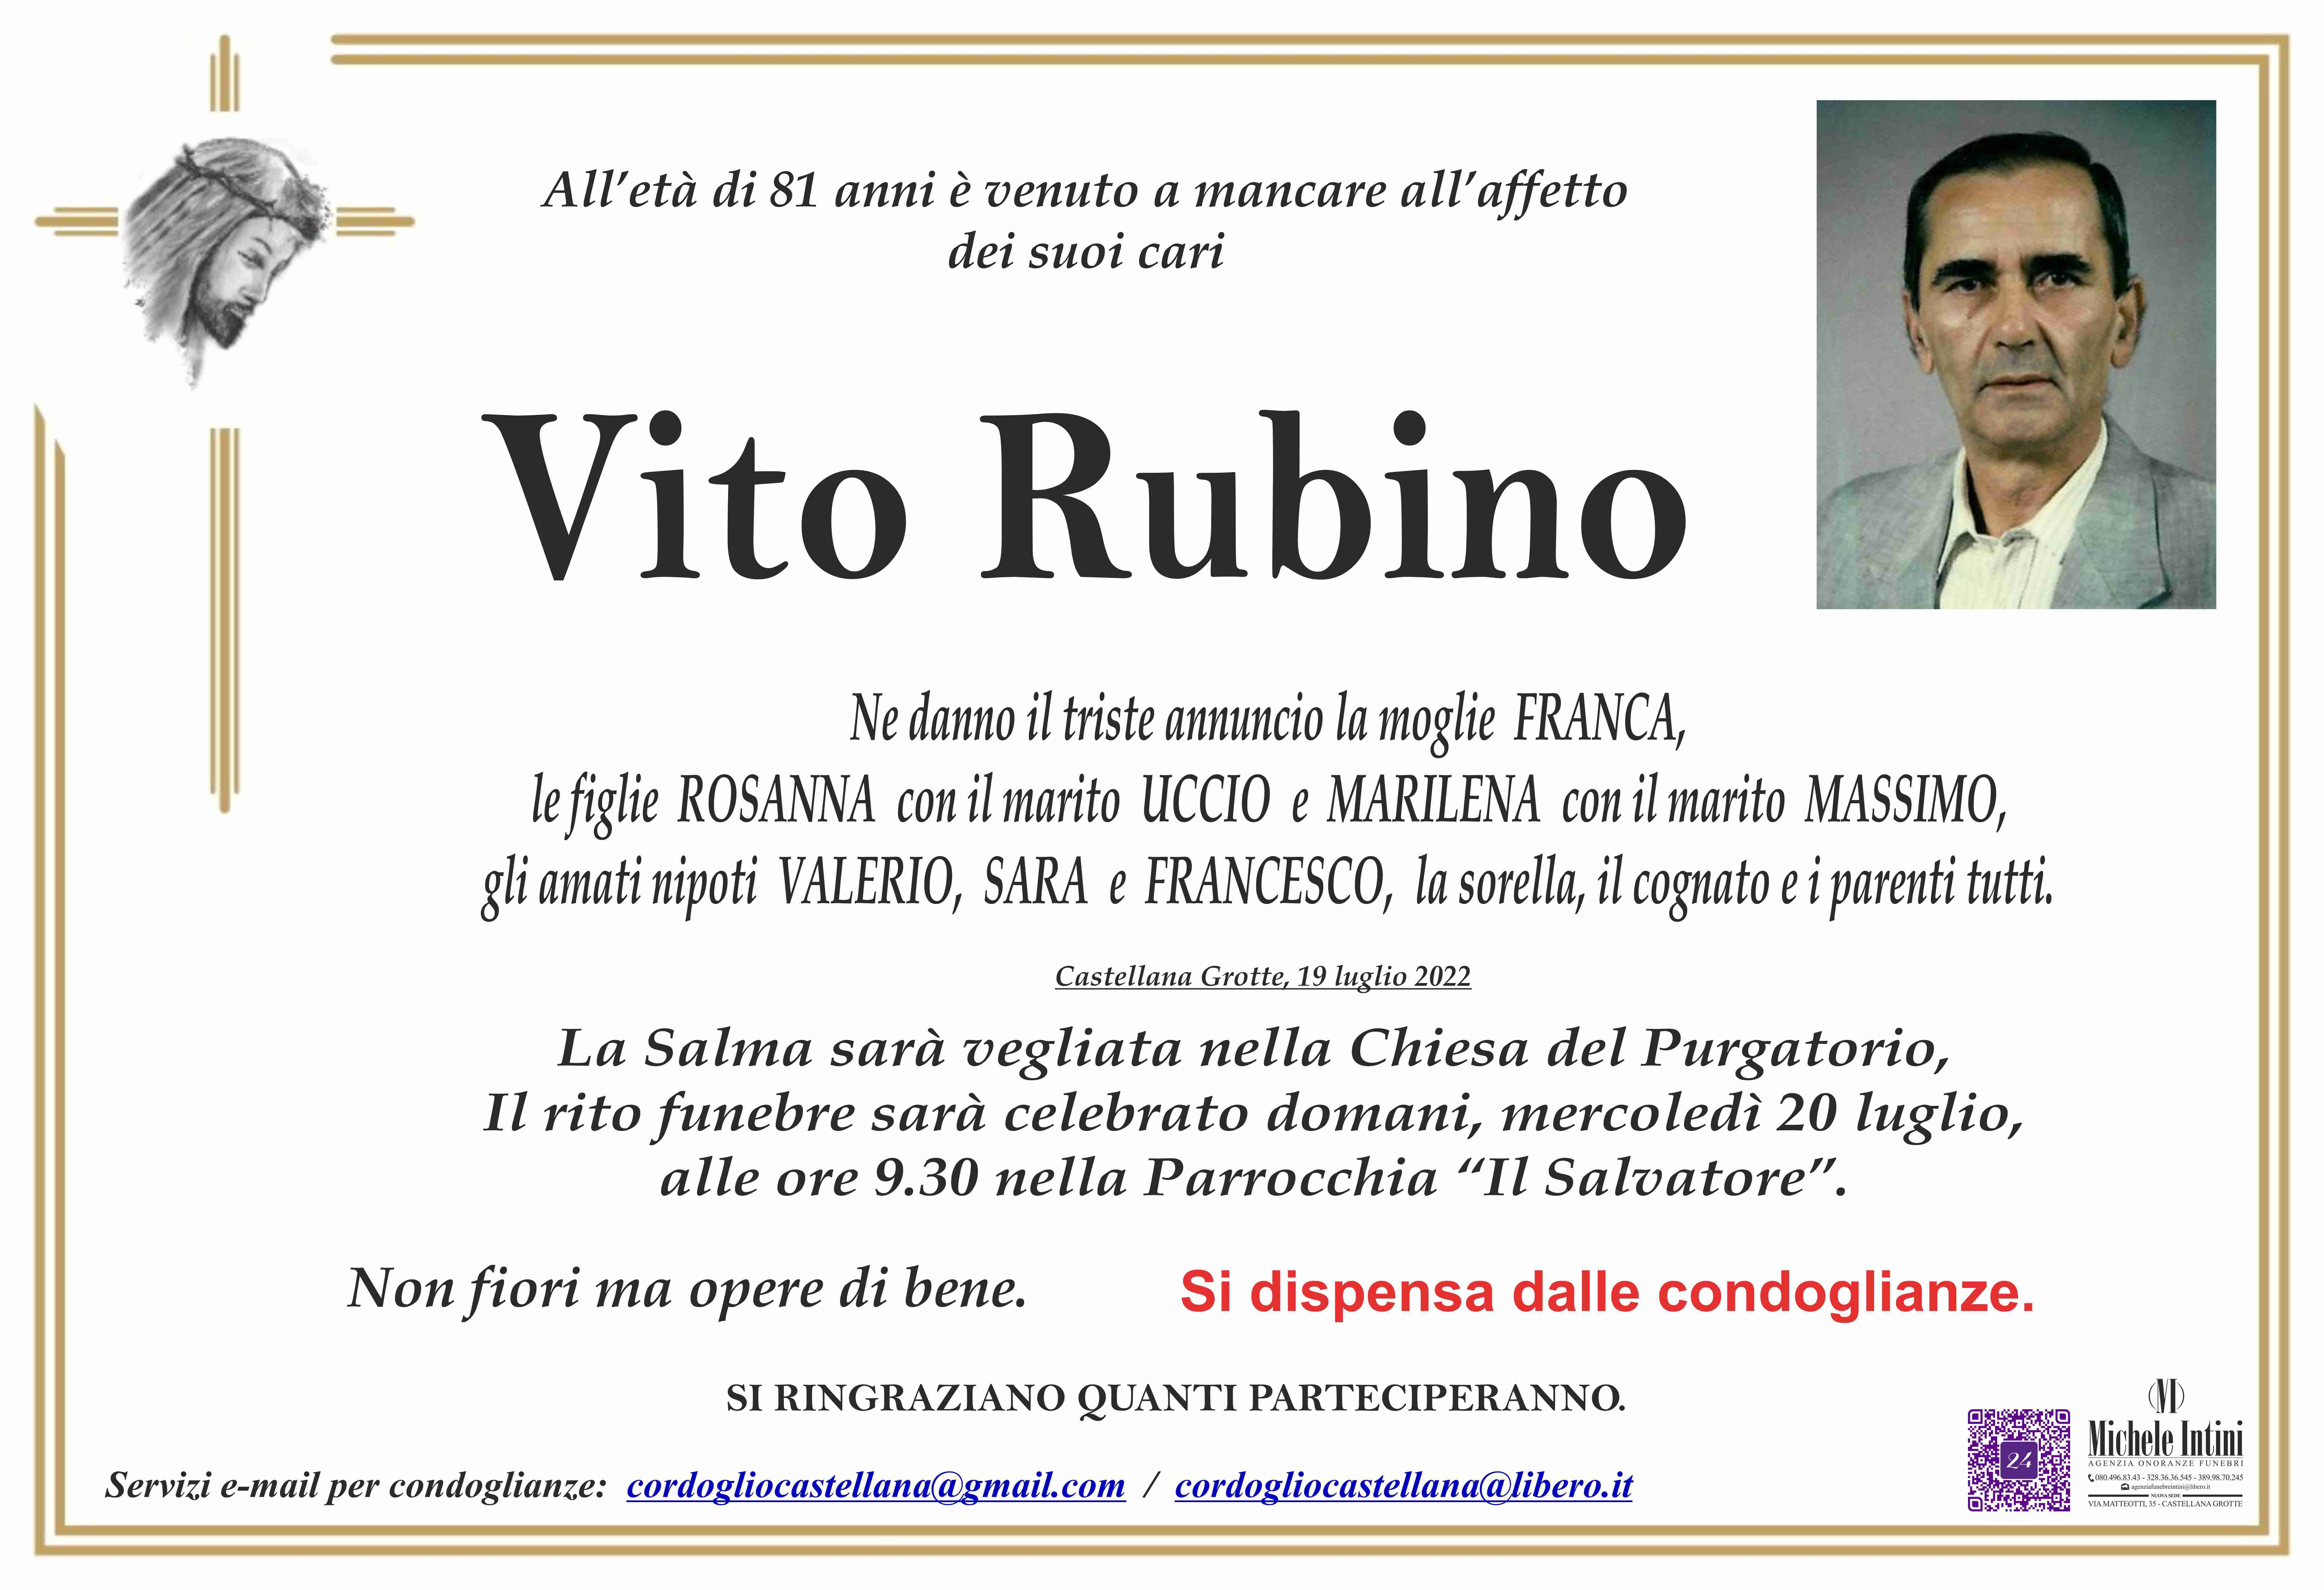 Vito Rubino